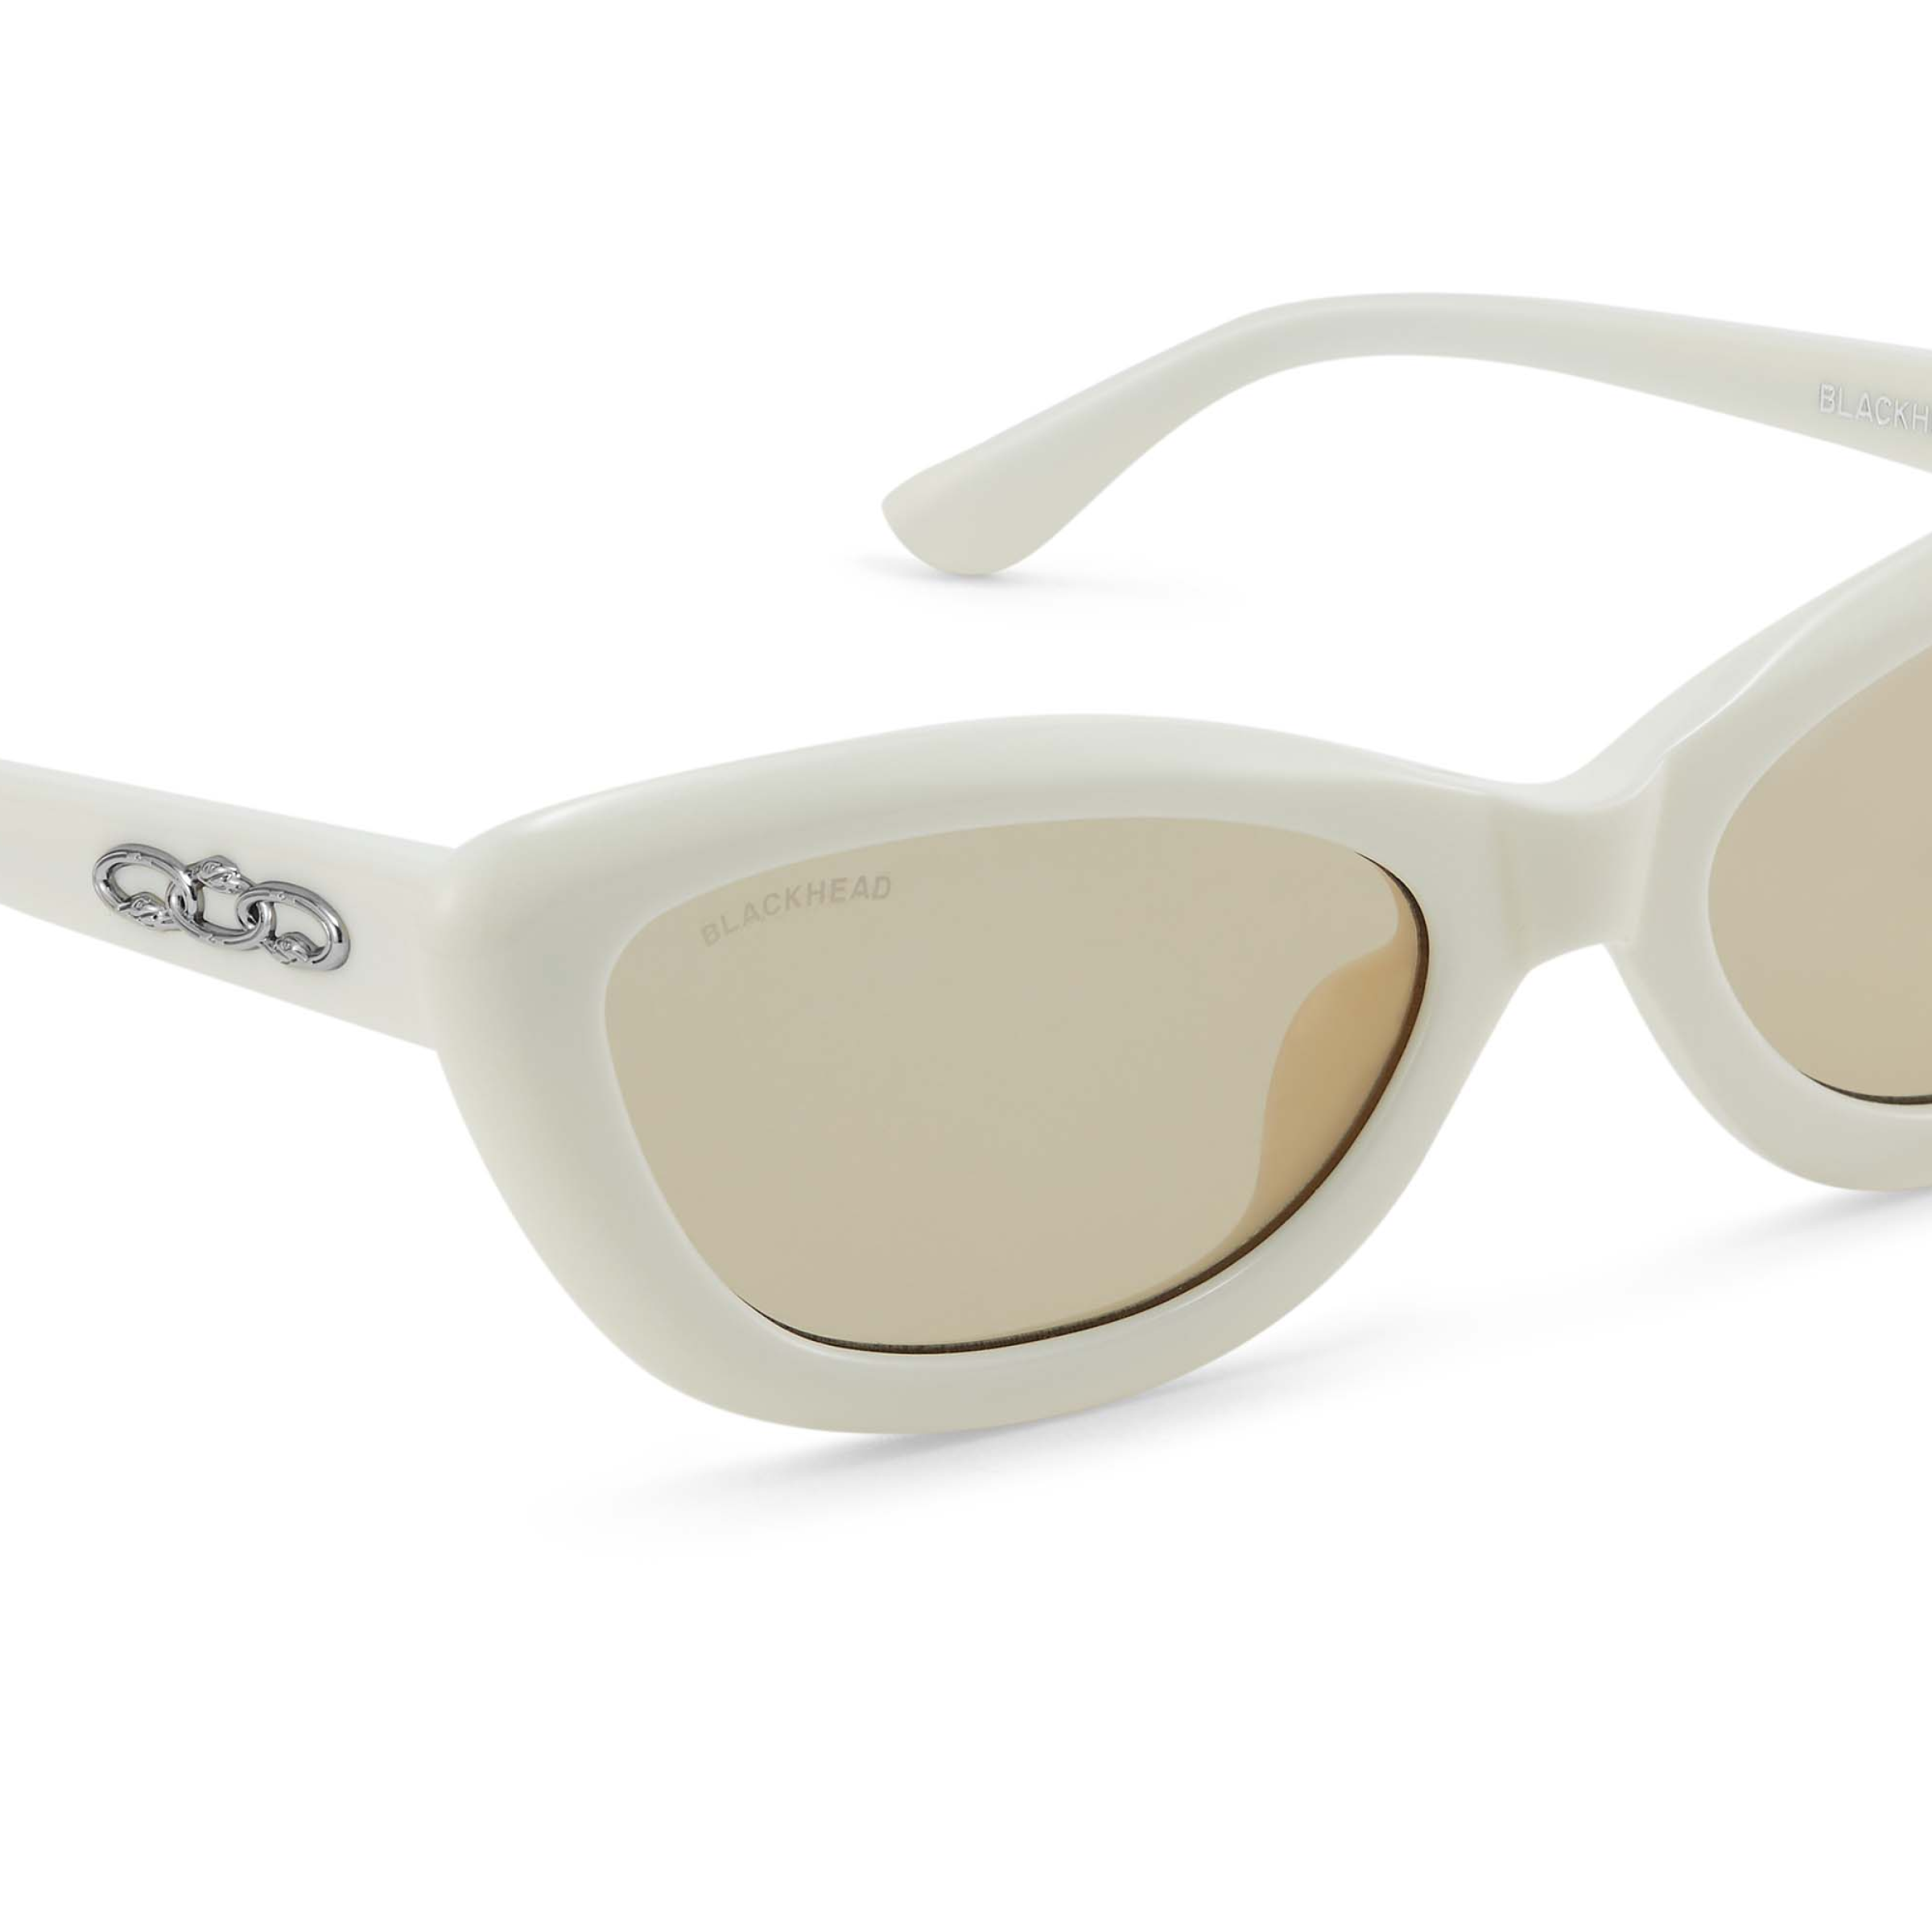 Cat-Eye Vintage Style Sunglasses (White) – Blackheadshop